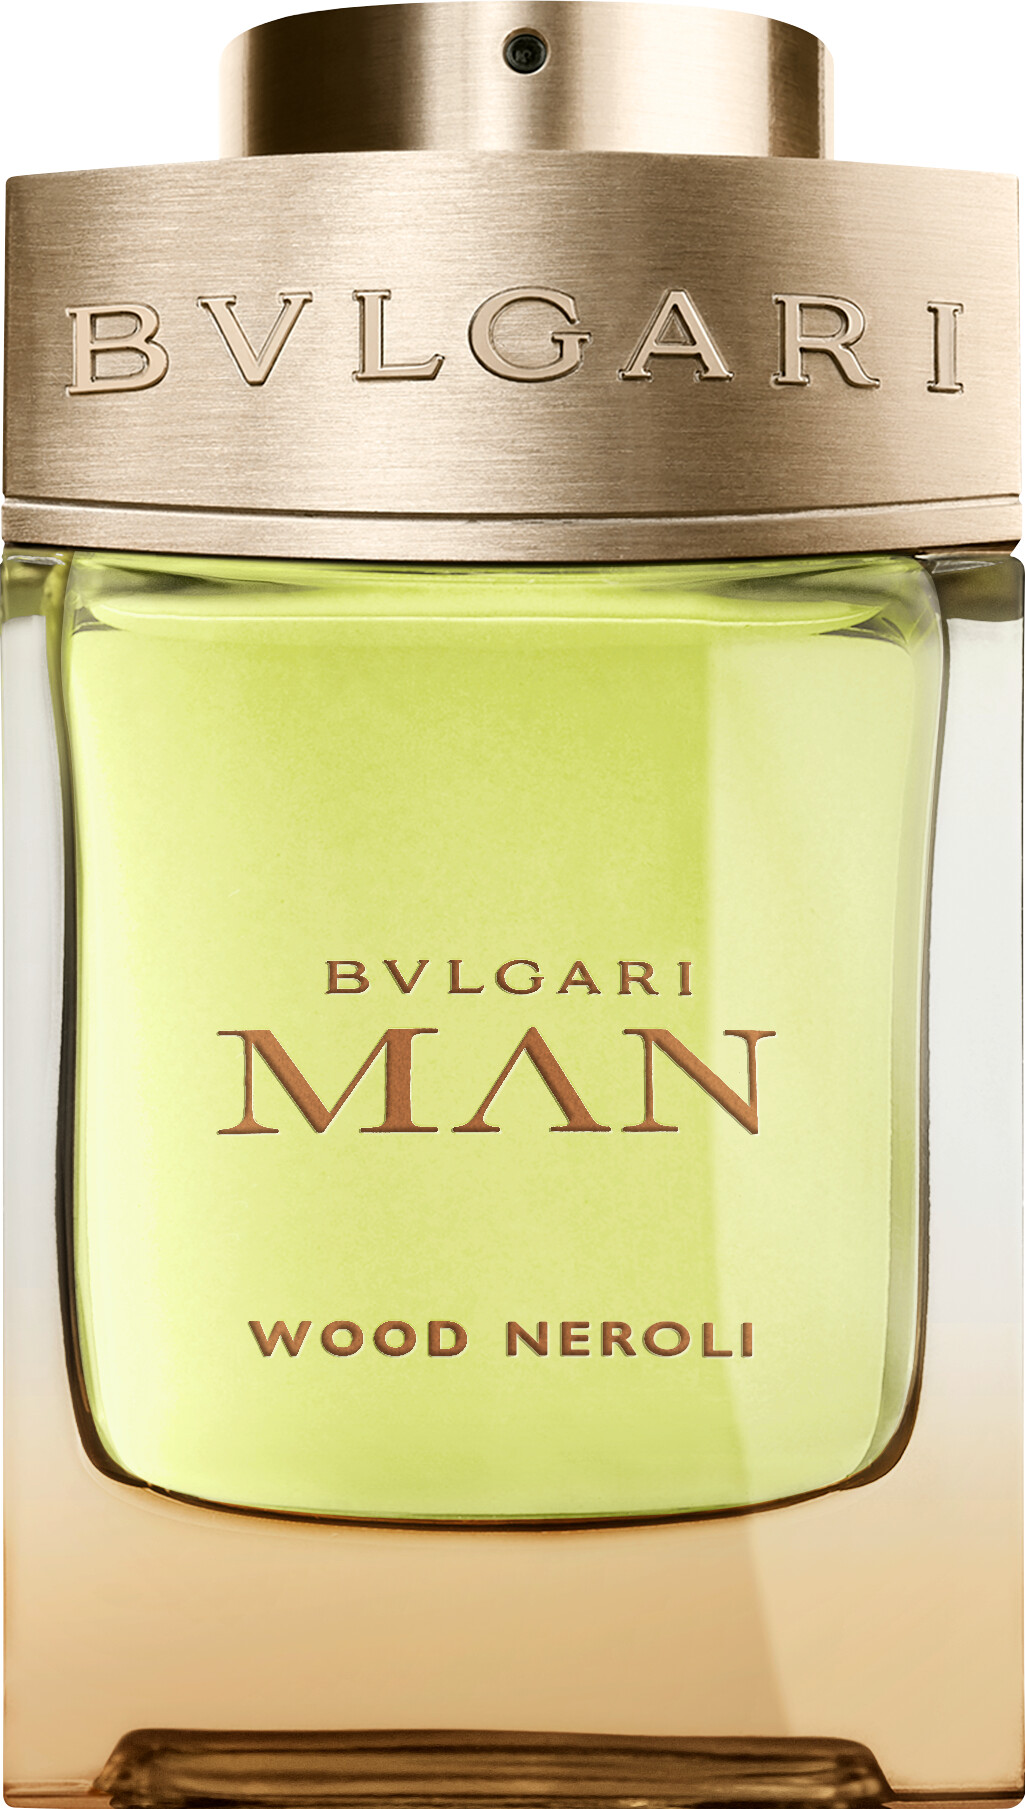 bvlgari man wood